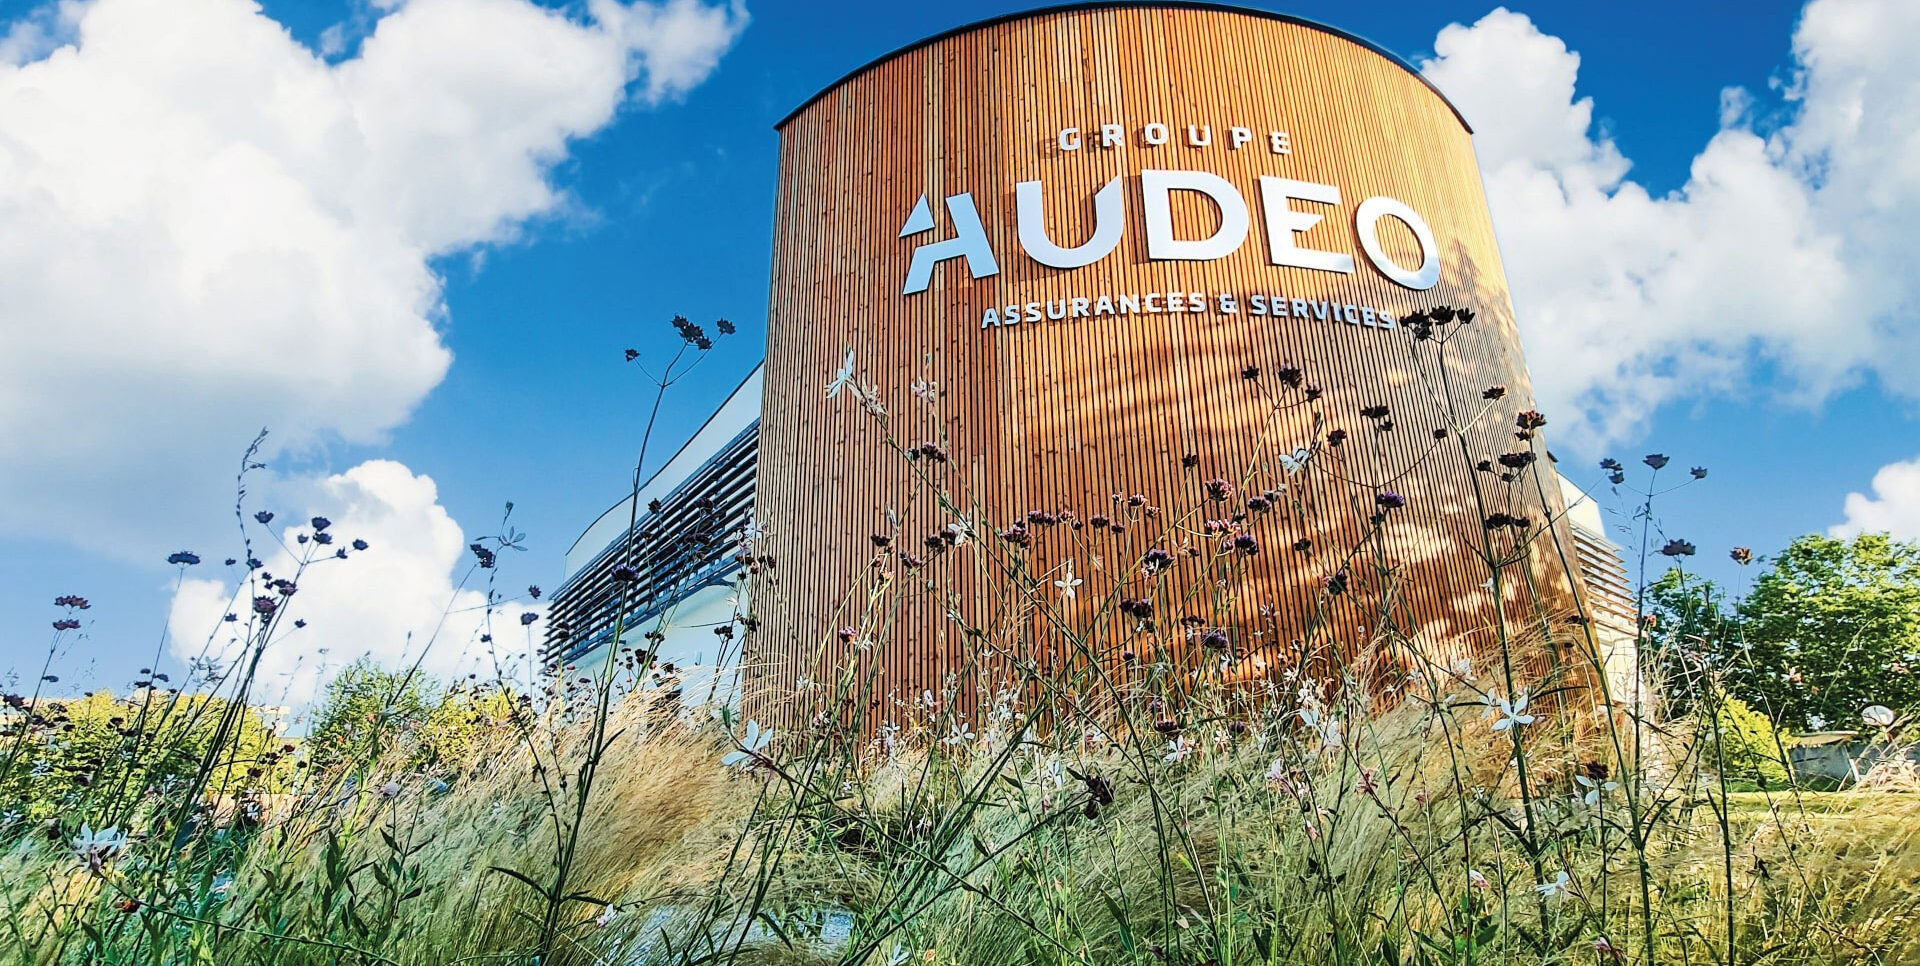 Le Groupe Audeo poursuit sa croissance, réaffirme son indépendance et met le cap sur son plan stratégique 2026